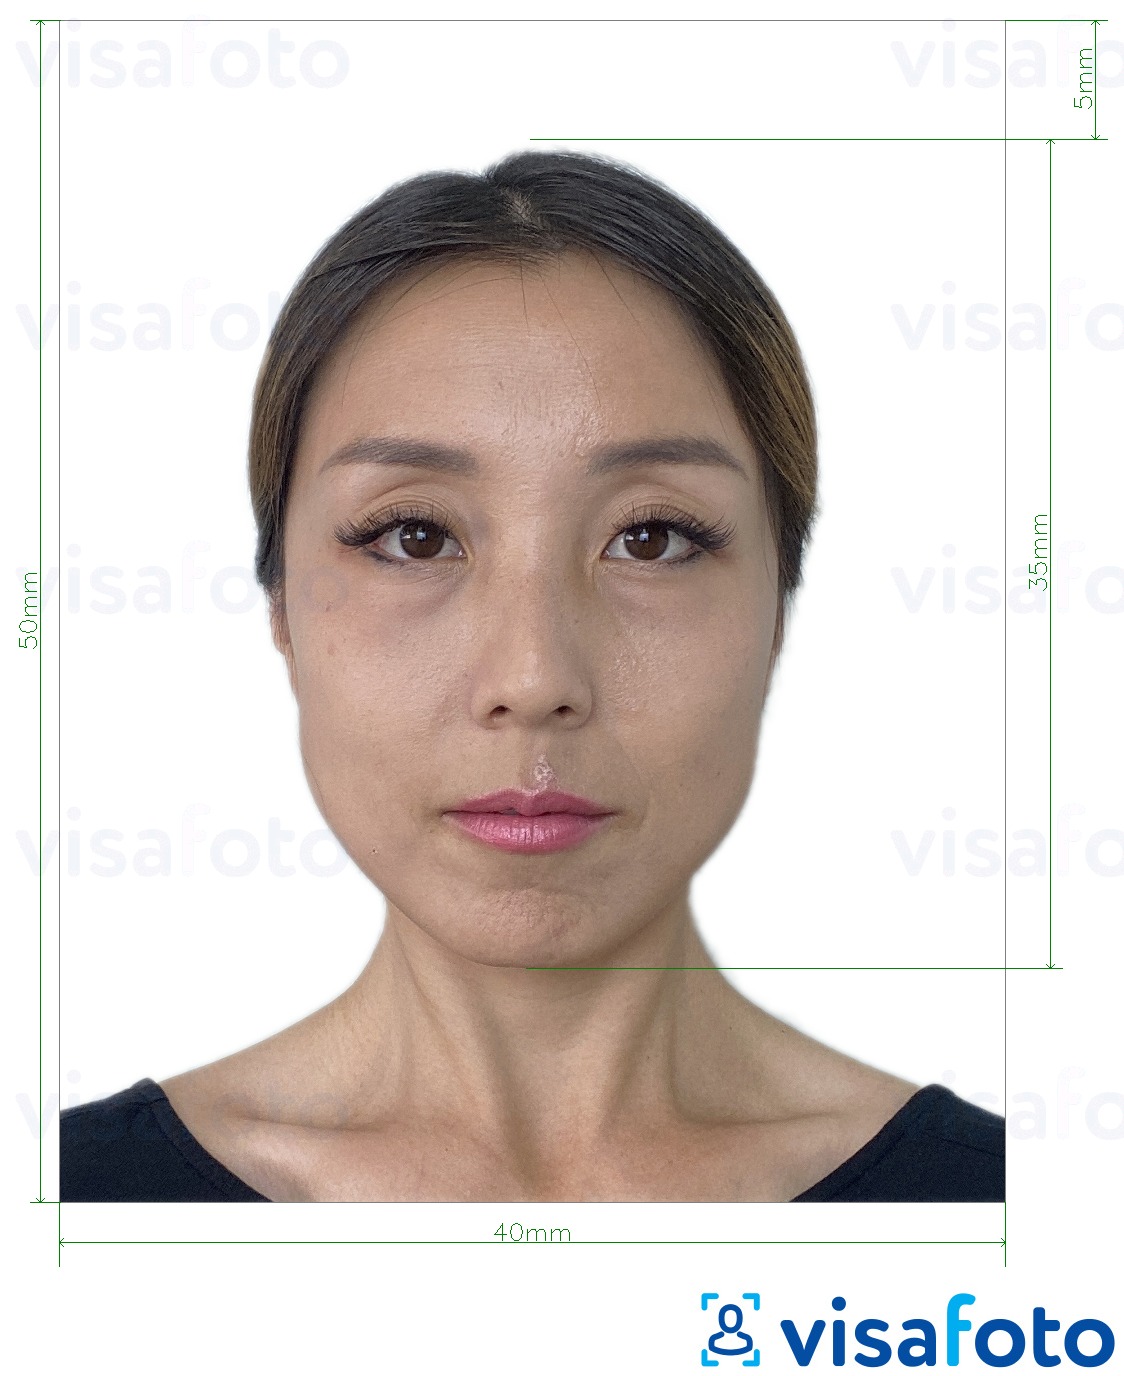  Hongkongi pass 40x50 mm (4x5 cm) fotonäidis koos täpse infoga mõõtude kohta.